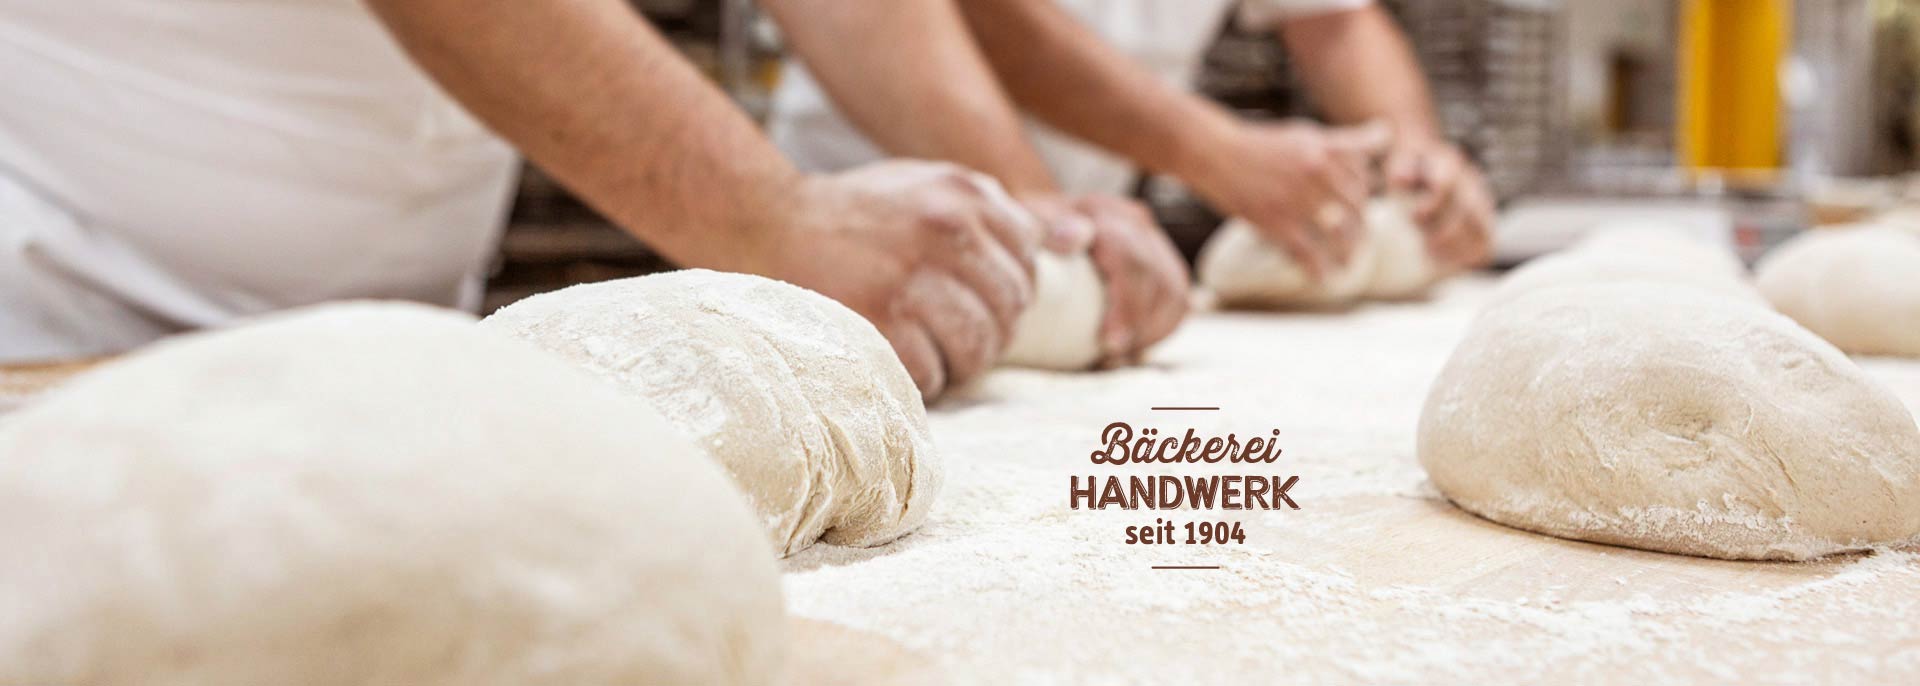 Bäckerei Handwerk